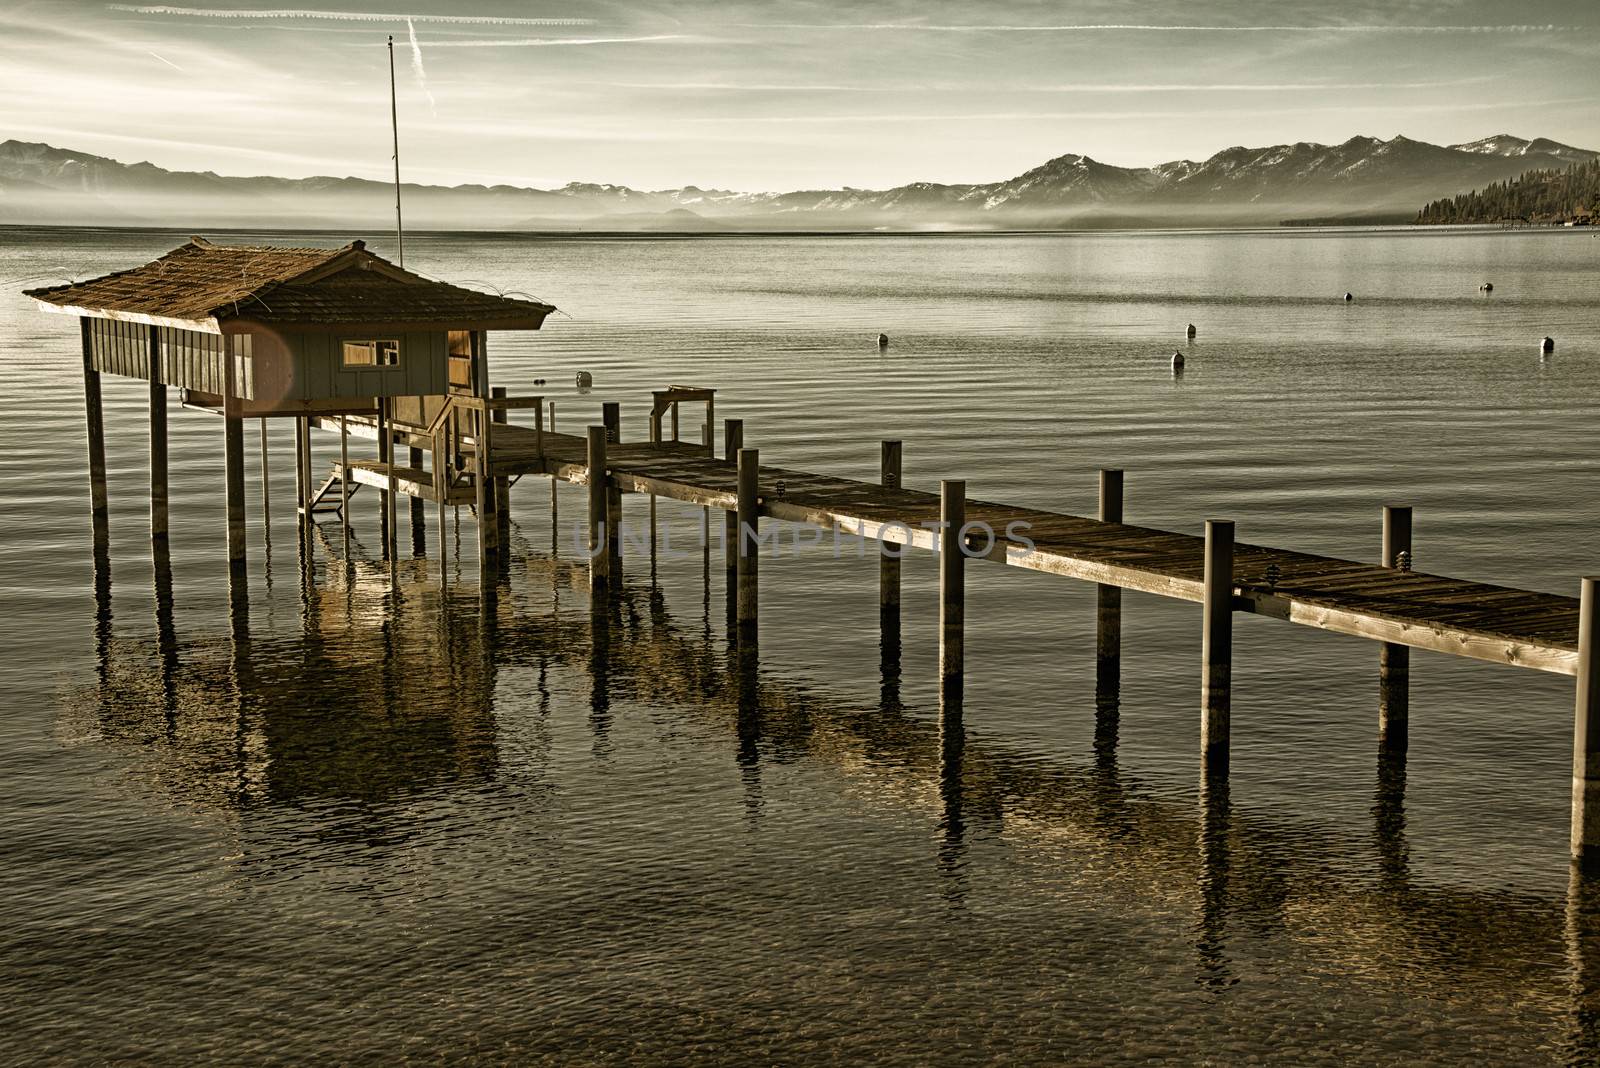 Stilt hut in a lake by CelsoDiniz